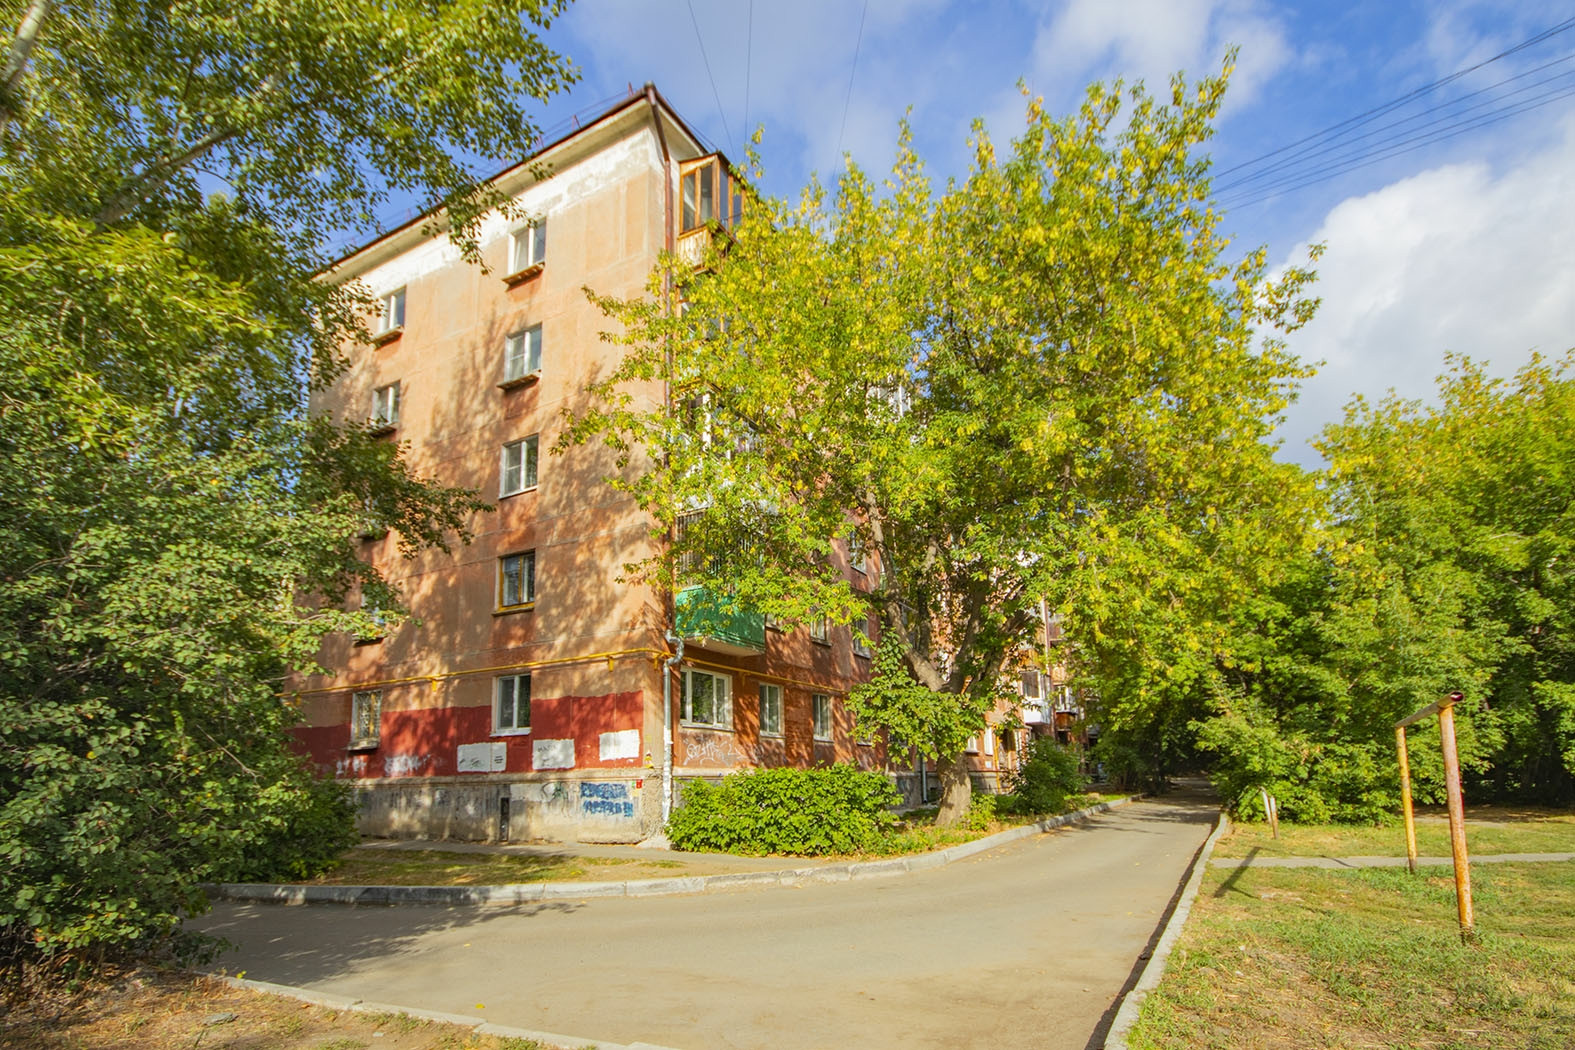 Продажа домов в красноуфимске свердловской области на авито с фото